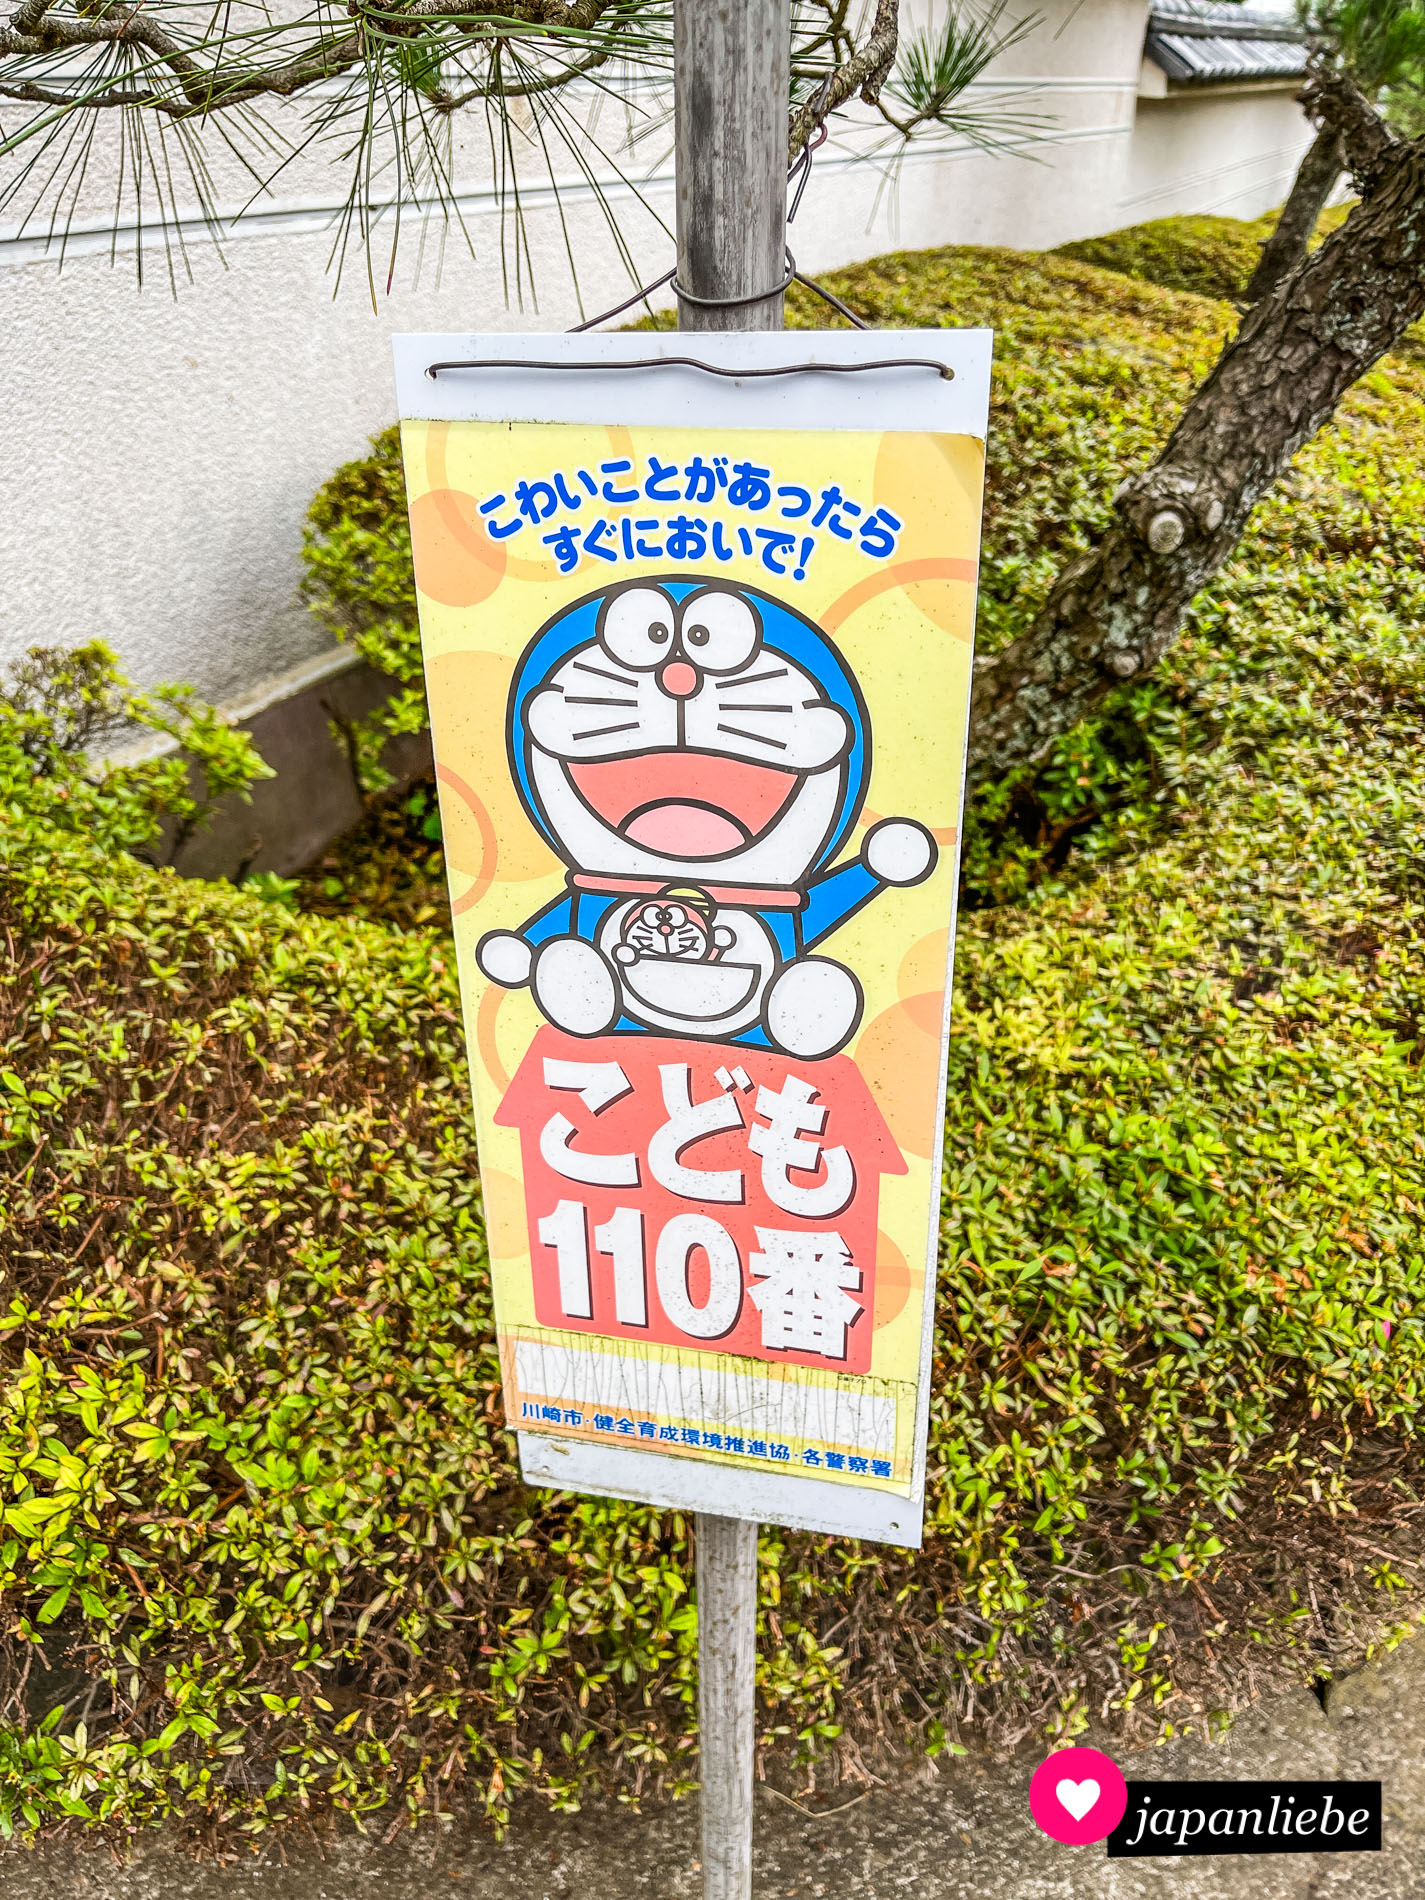 Die beliebte Comicfigur Doraemon weißt Kinder auf die 110 als Notfallnummer hin, wenn sie irgendetwas ängstigt.